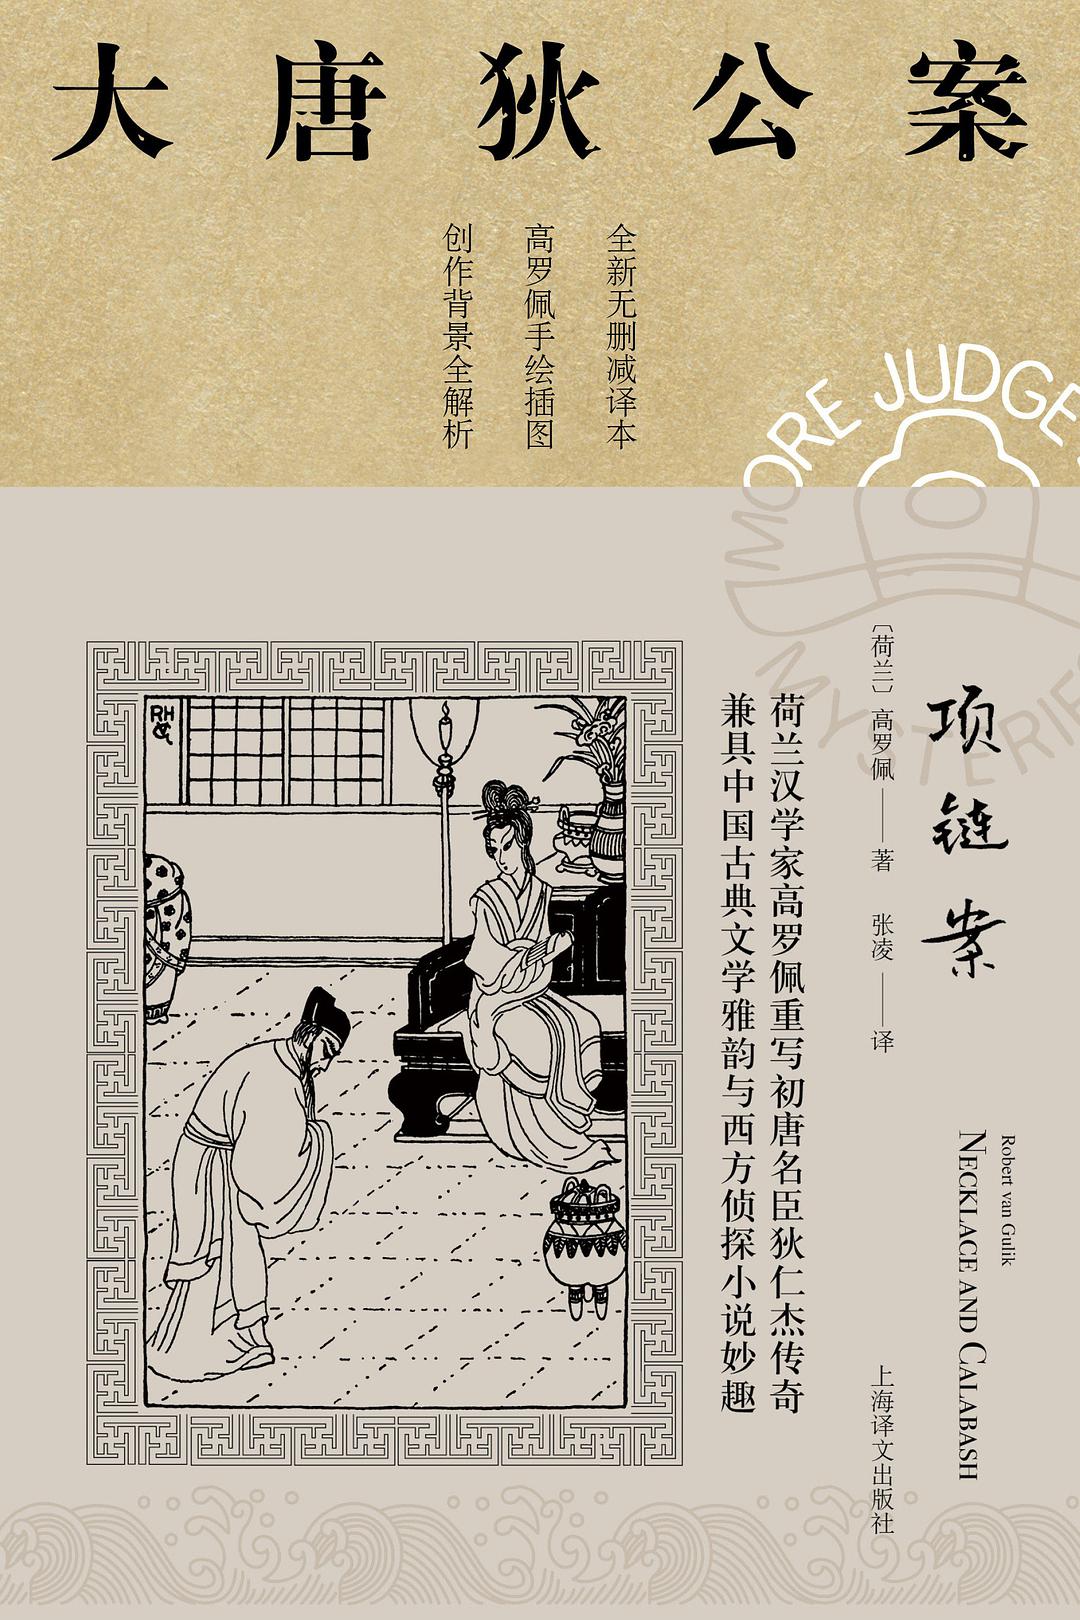 项链案 (Paperback, Chinese language, 2021, 上海译文出版社)